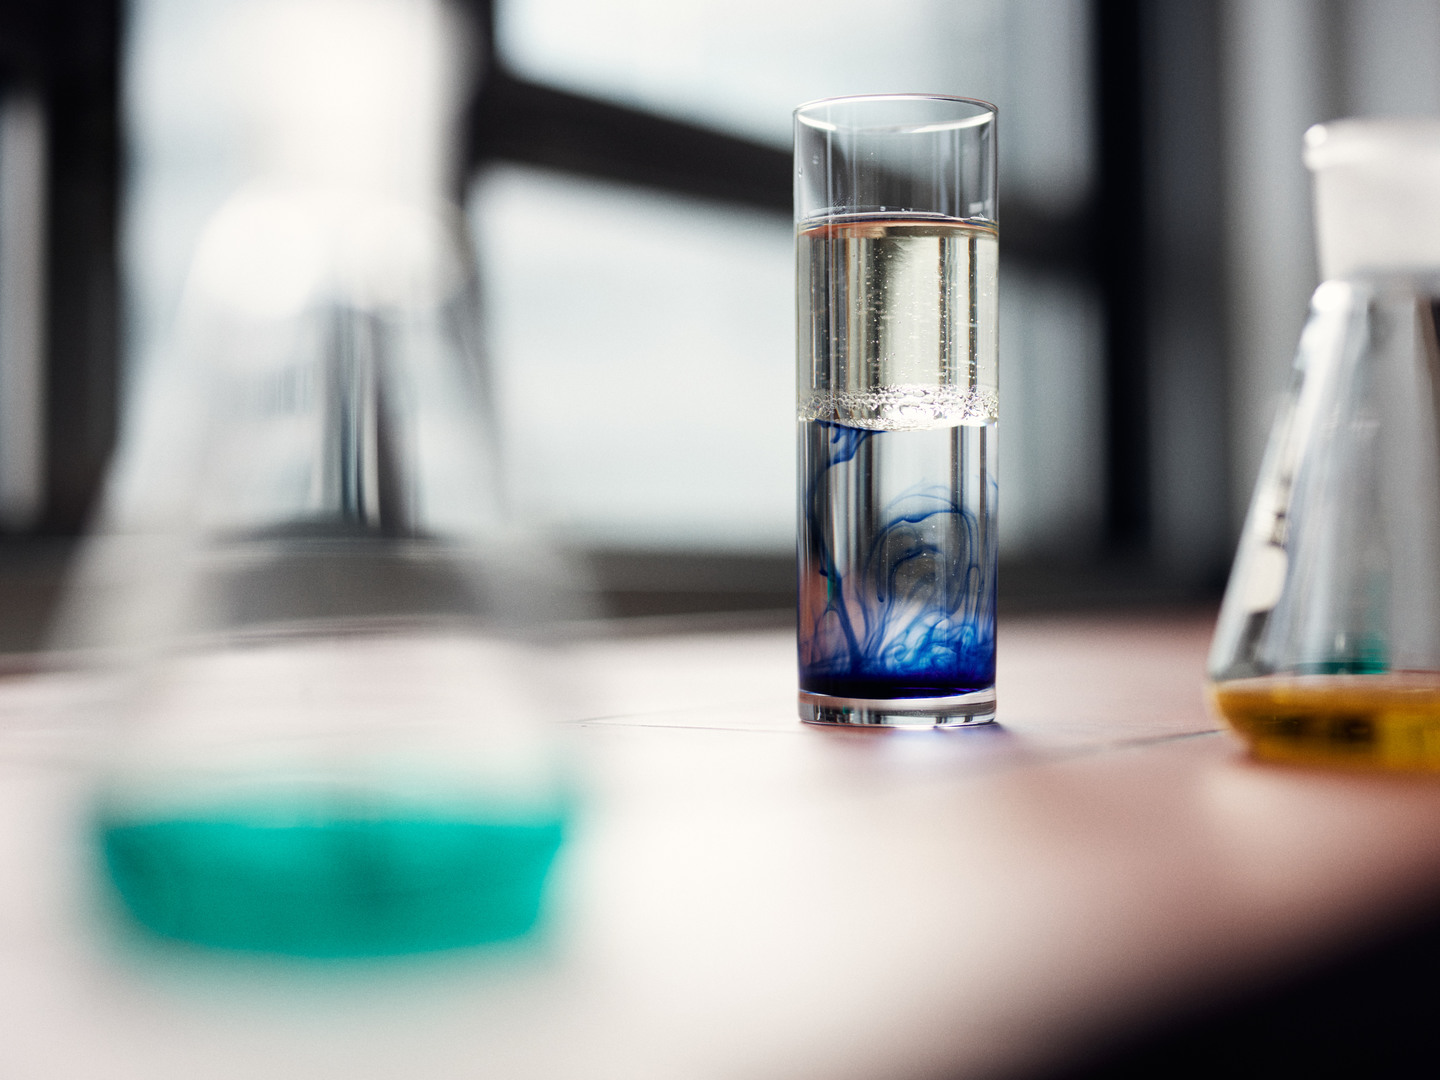 Ein Glas in dem Öl auf Wasser schwimmt mit blauer Farbe unten im Wasser. Rechts und links sind unscharfe Erlenmeyerkolben.